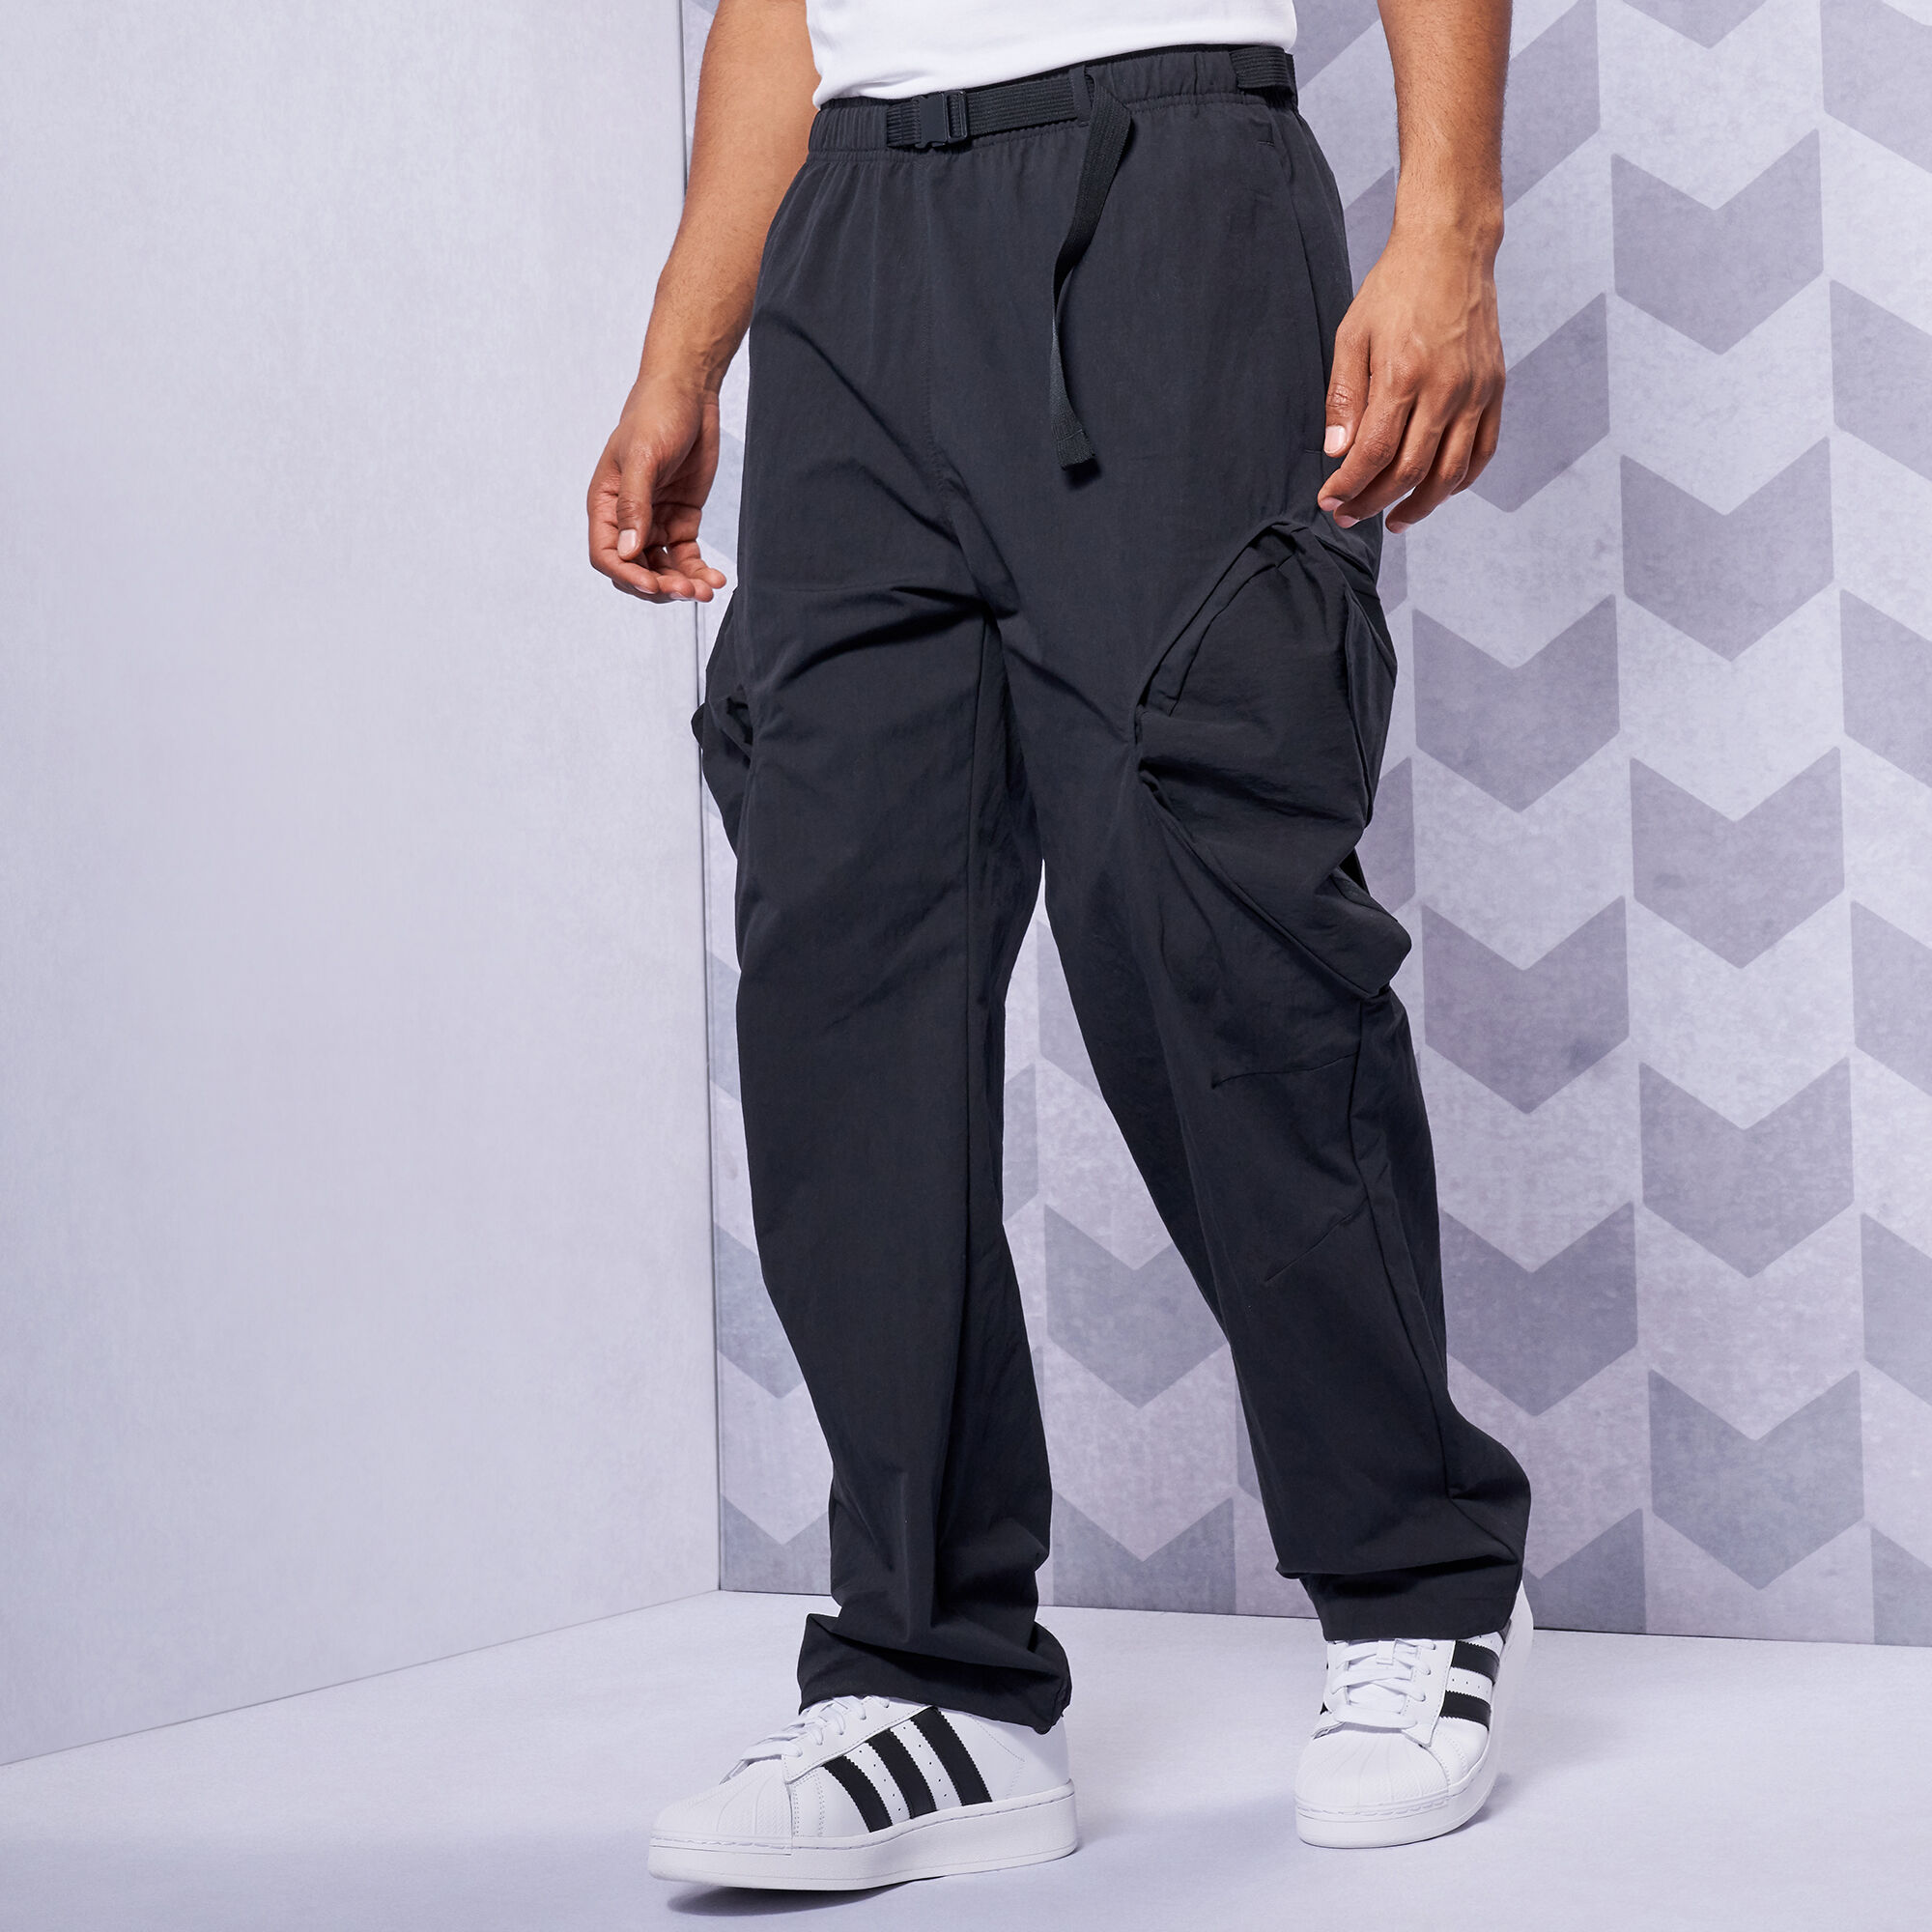 Adidas Men's Adventure Premium Pant in Black adidas